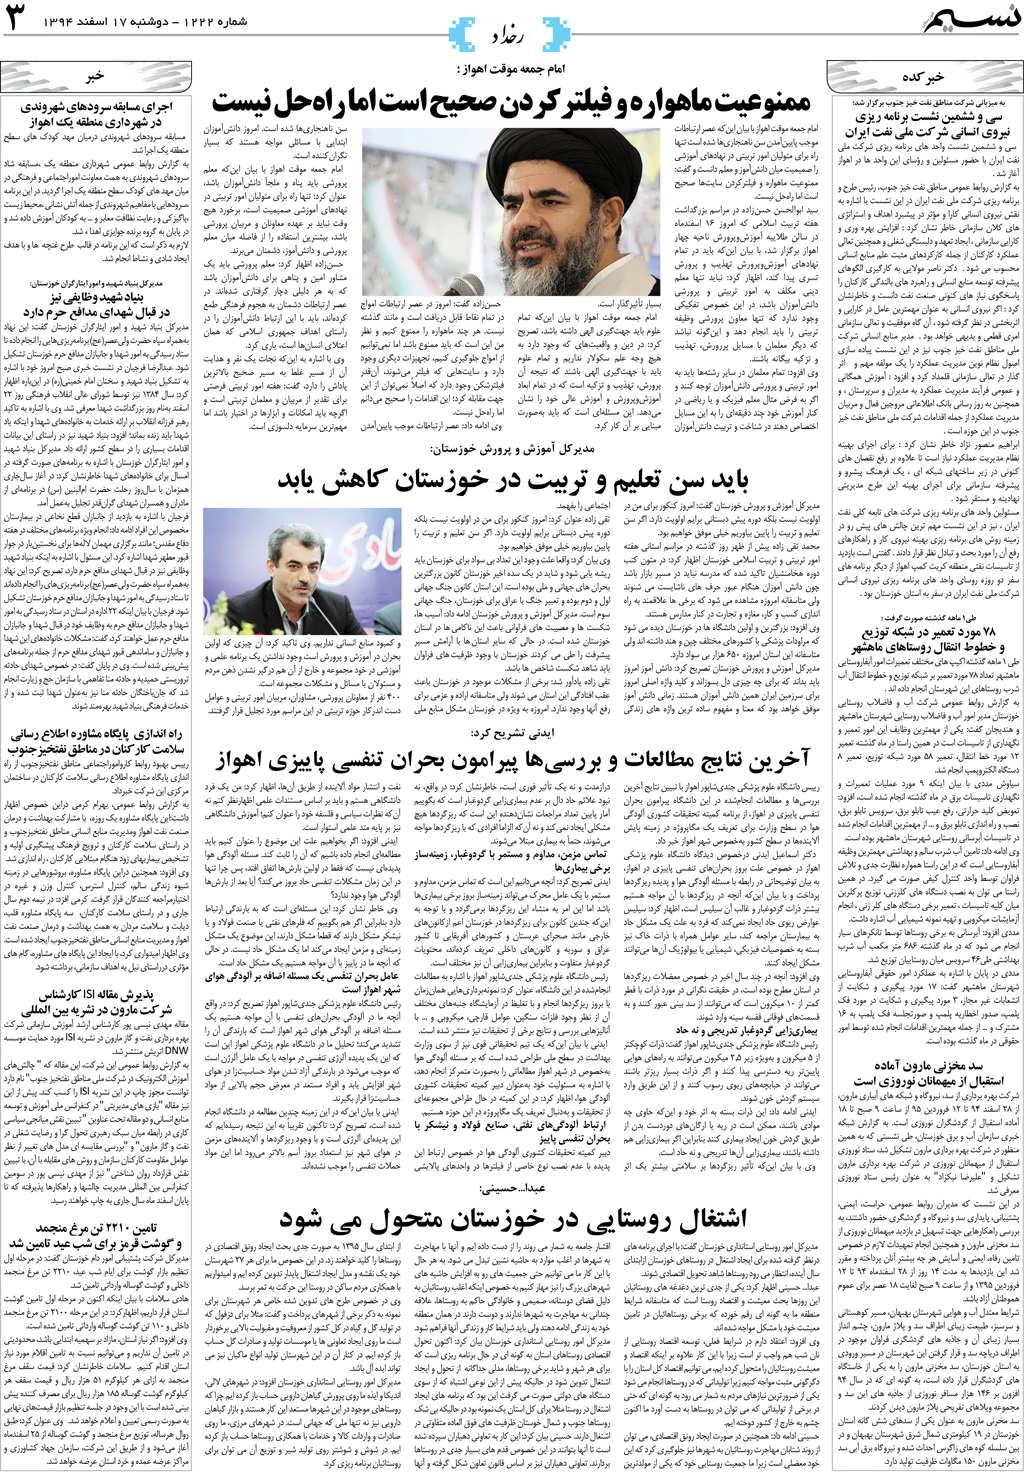 صفحه رخداد روزنامه نسیم شماره 1222